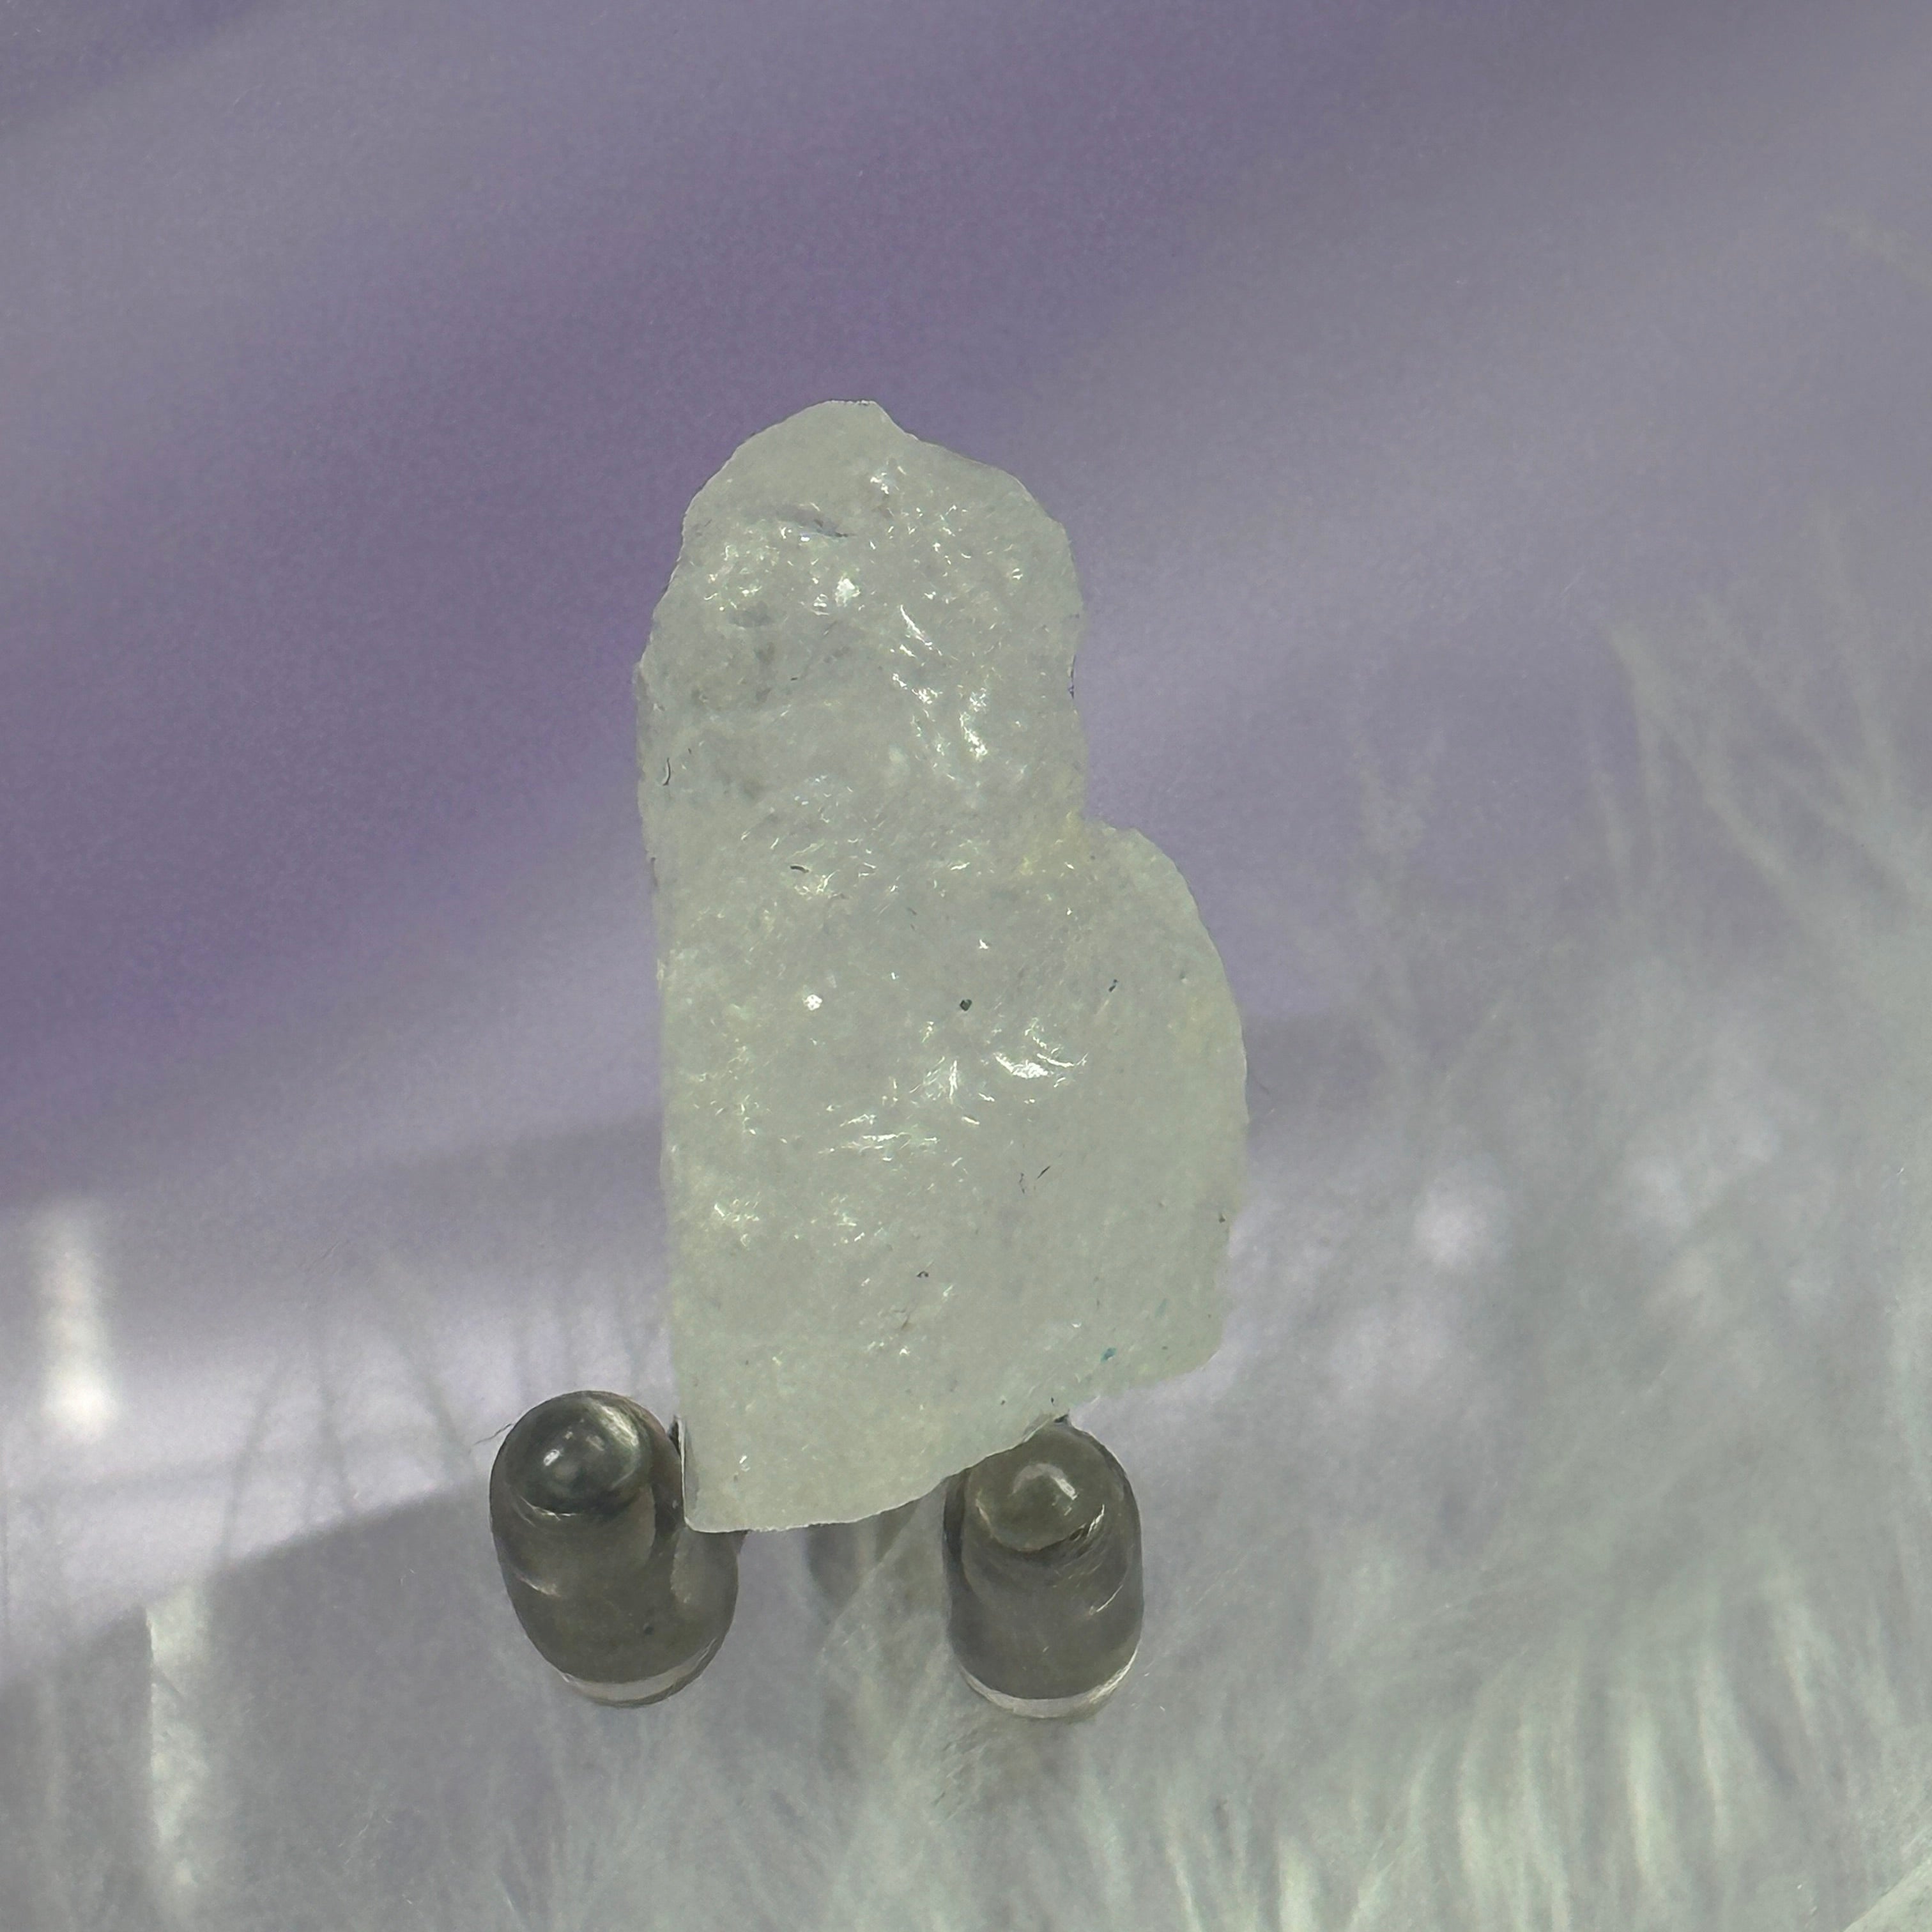 Rare small natural piece Petalite crystal from Minas Gerias 6.6g SN55233